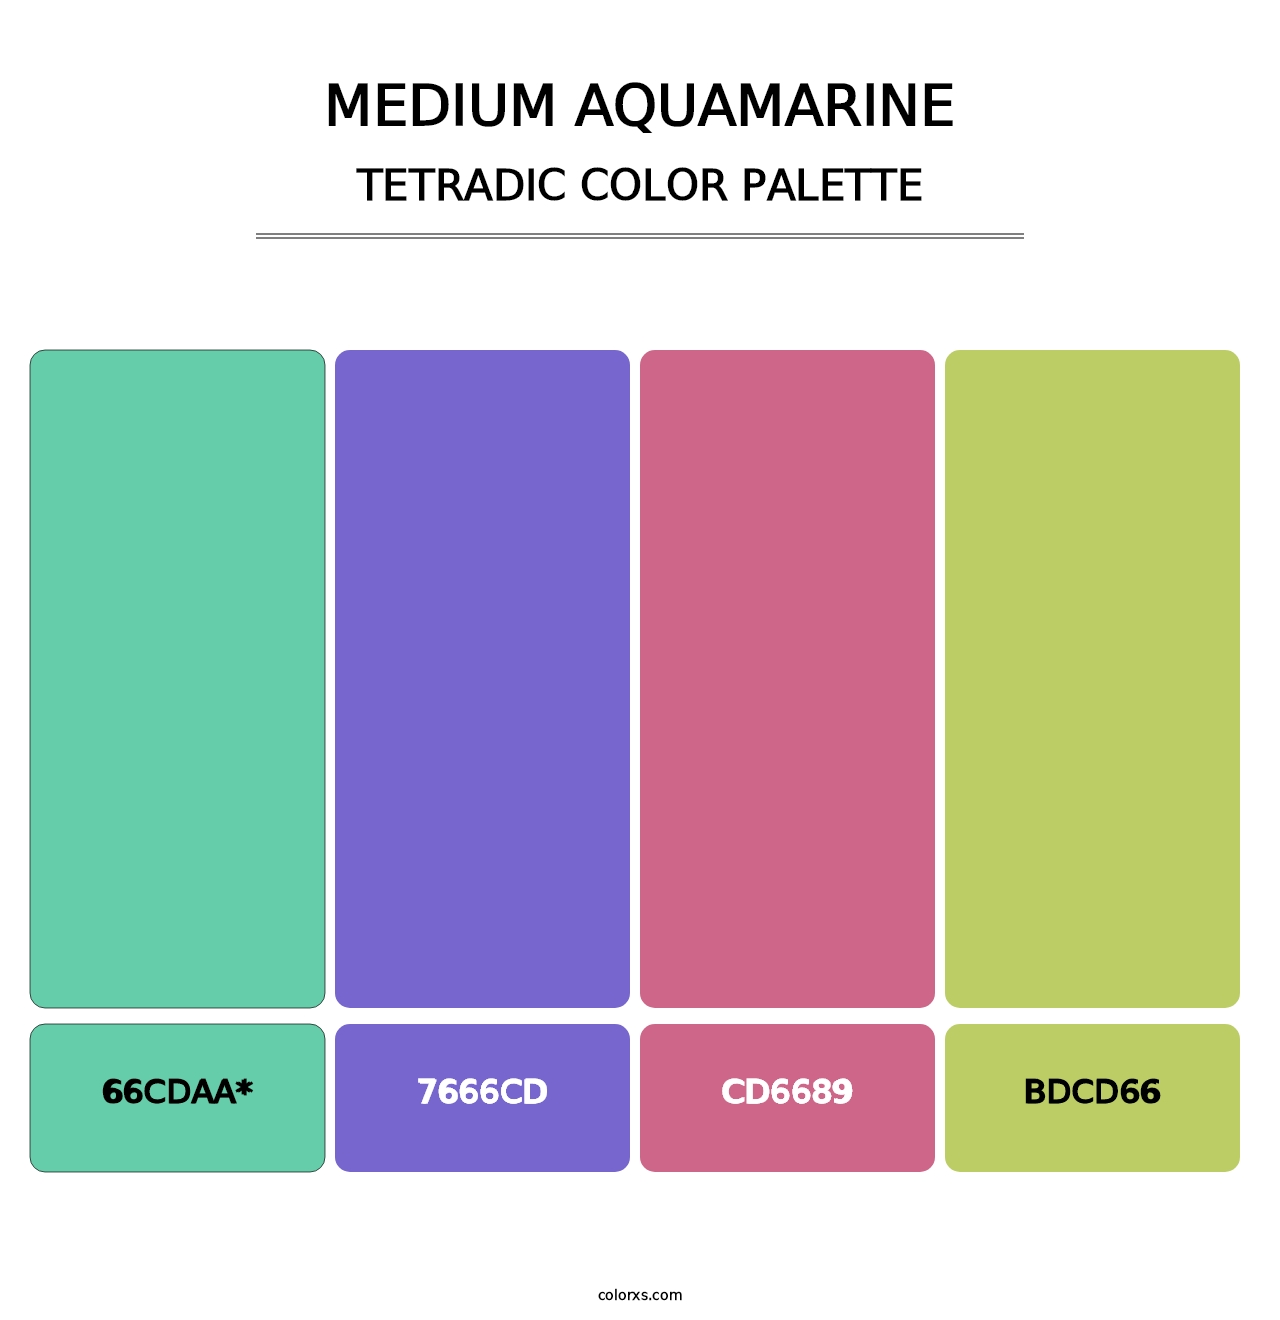 Medium Aquamarine - Tetradic Color Palette